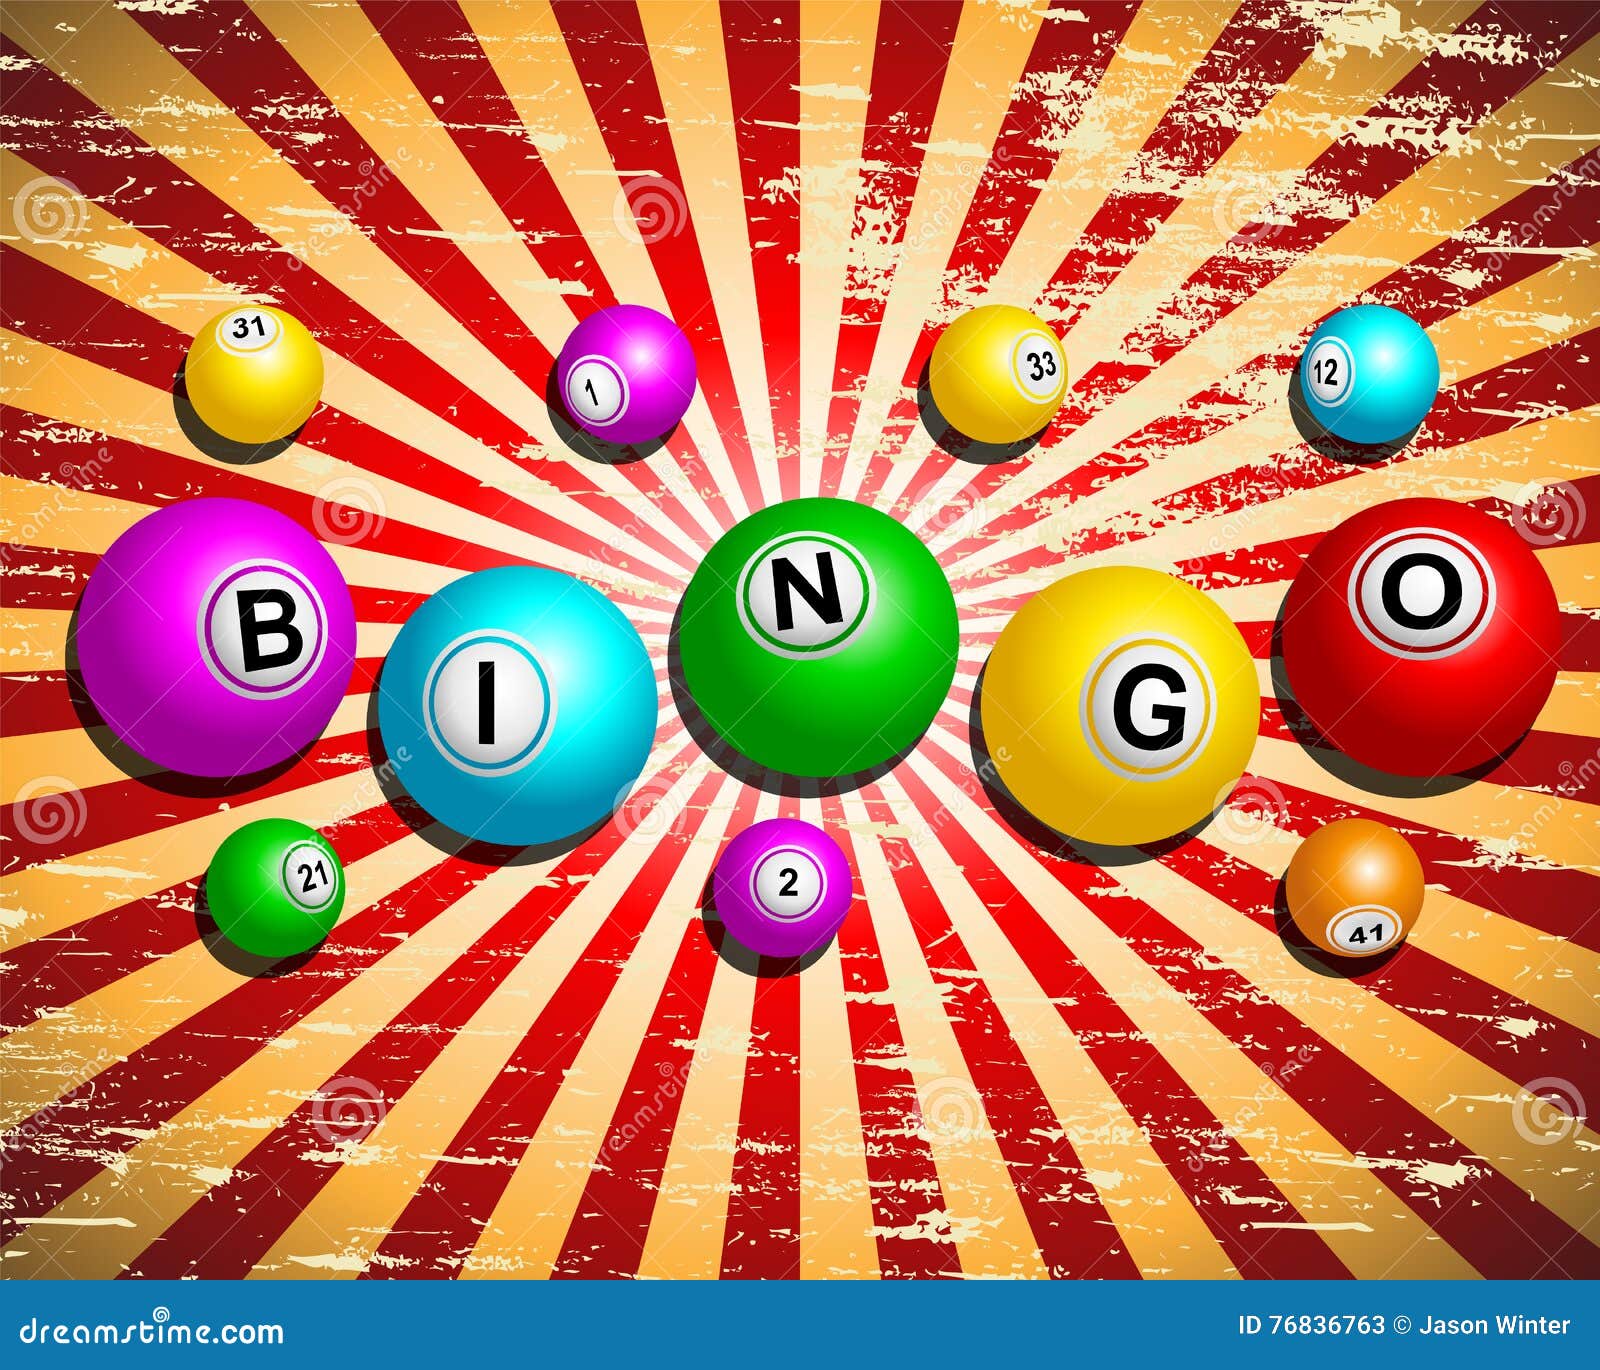 roleta de bingo grande